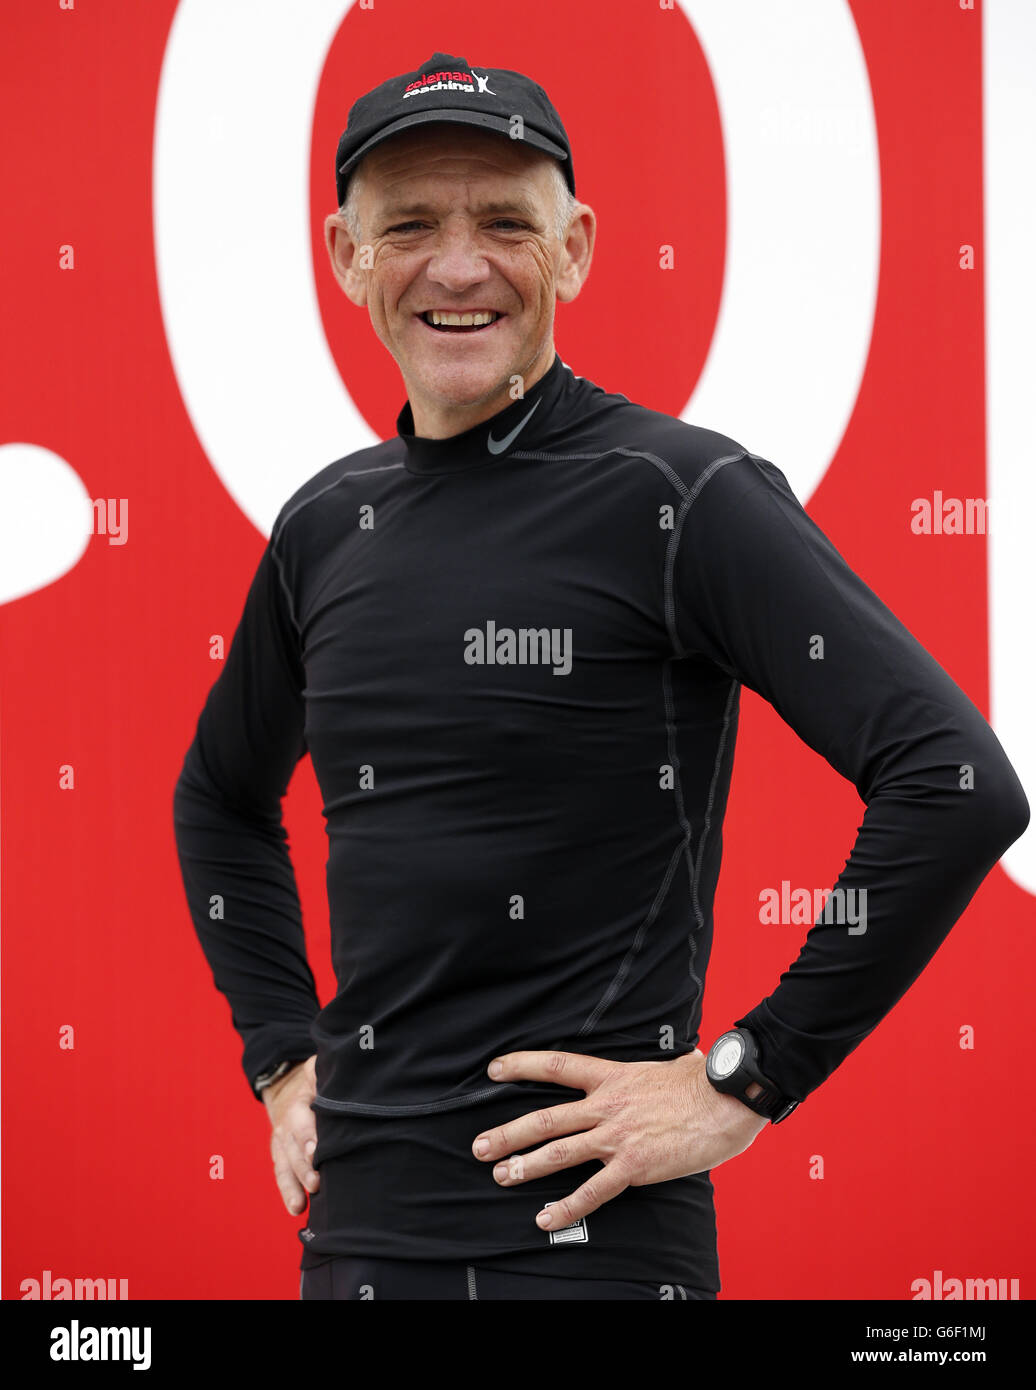 Rory Coleman qui a parcouru 28 miles par jour pendant 28 jours consécutifs dans tout le pays, avec un disque de trois mètres de haut à Trafalgar Square, Londres, pour lancer 'Toptober', une campagne pour amener les gens à renoncer à fumer. Banque D'Images